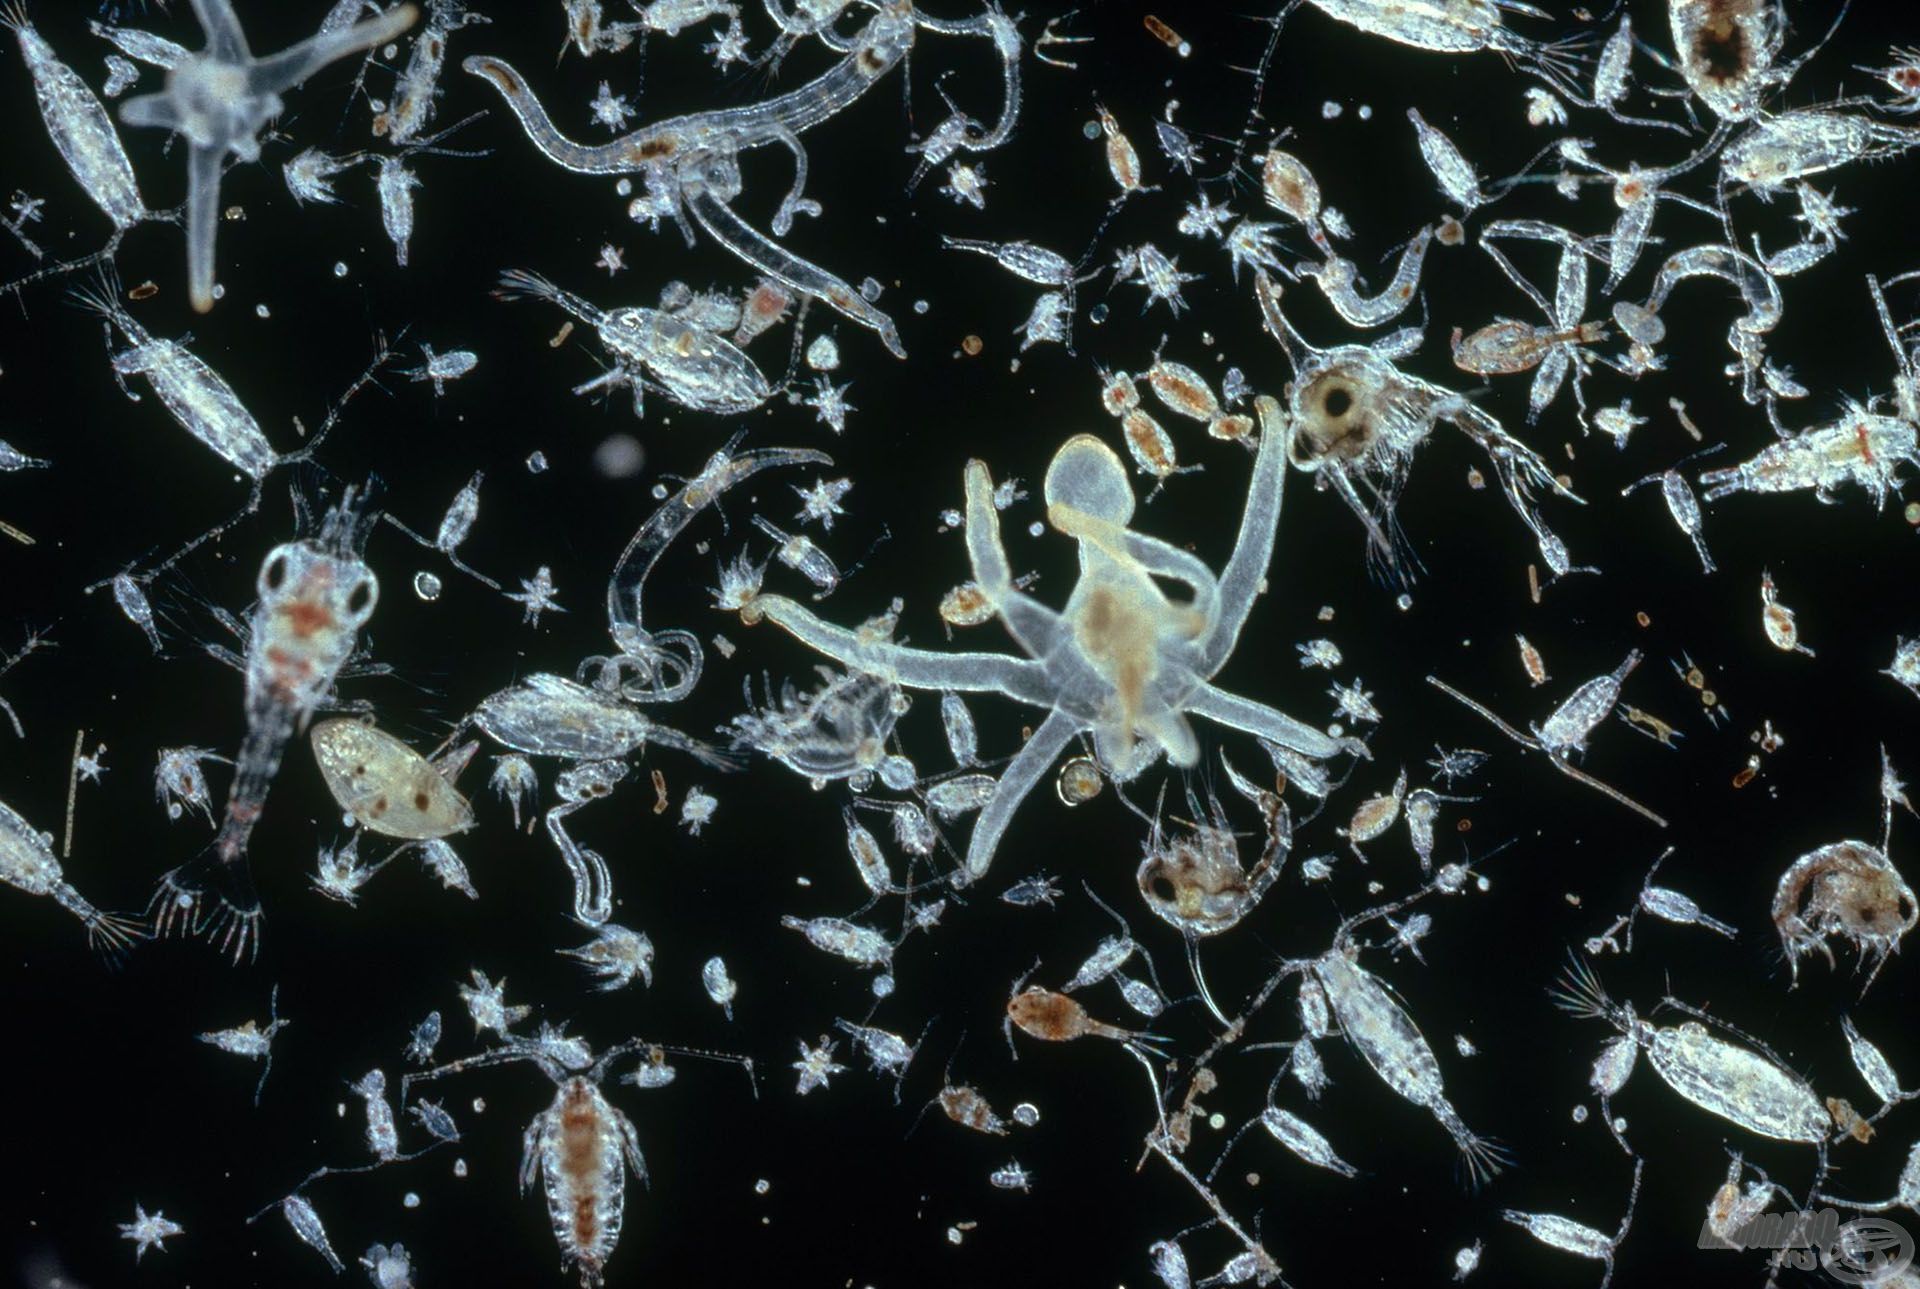 A busák elsődleges tápláléka a plankton, ami a vízben lebegő parányi élőlények életközössége (nationalgeographic.com)